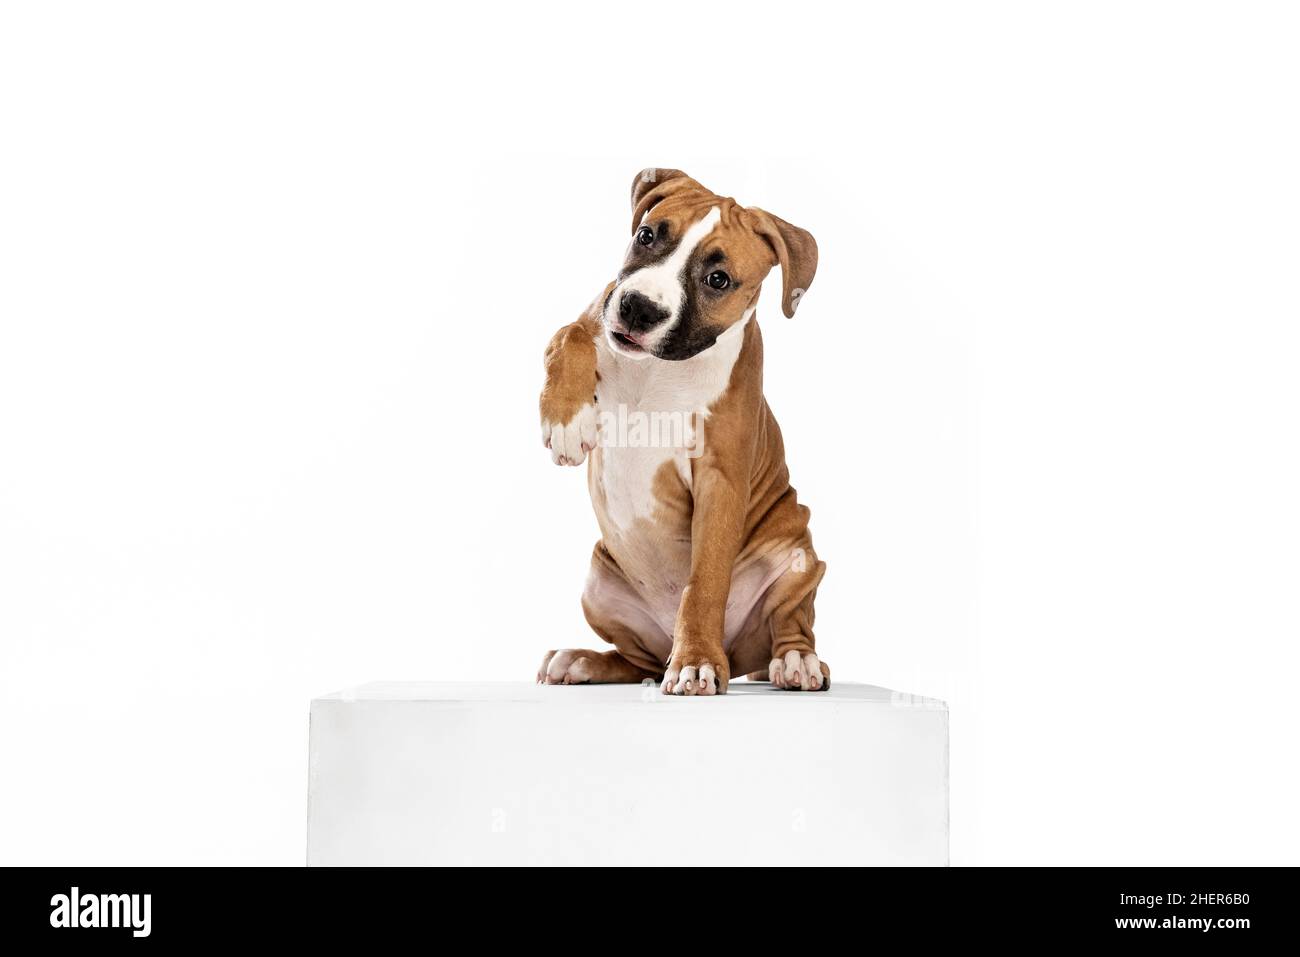 Adorable chien de race, le Terrier américain du Staffordshire, assis sur un sol isolé sur fond blanc.Concept de beauté, race, animaux de compagnie, vie animale. Banque D'Images